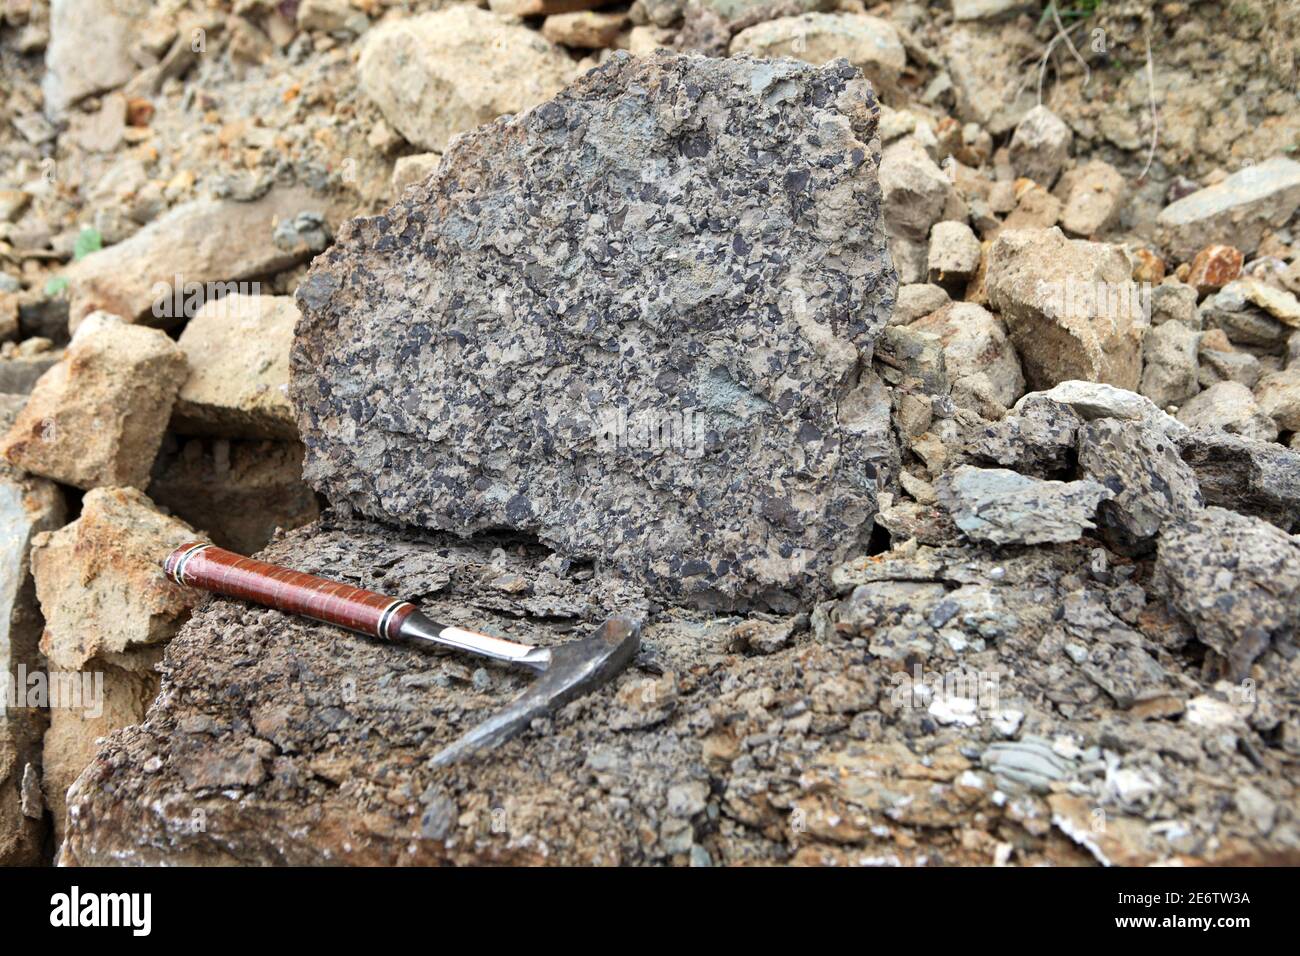 Geologen hämmern auf das Phosphoritgestein bei der Geologischen Feldarbeit. Steinhammer oder Pickhammer zum Spalten und Brechen von Steinen verwendet. Phosphor Stockfoto